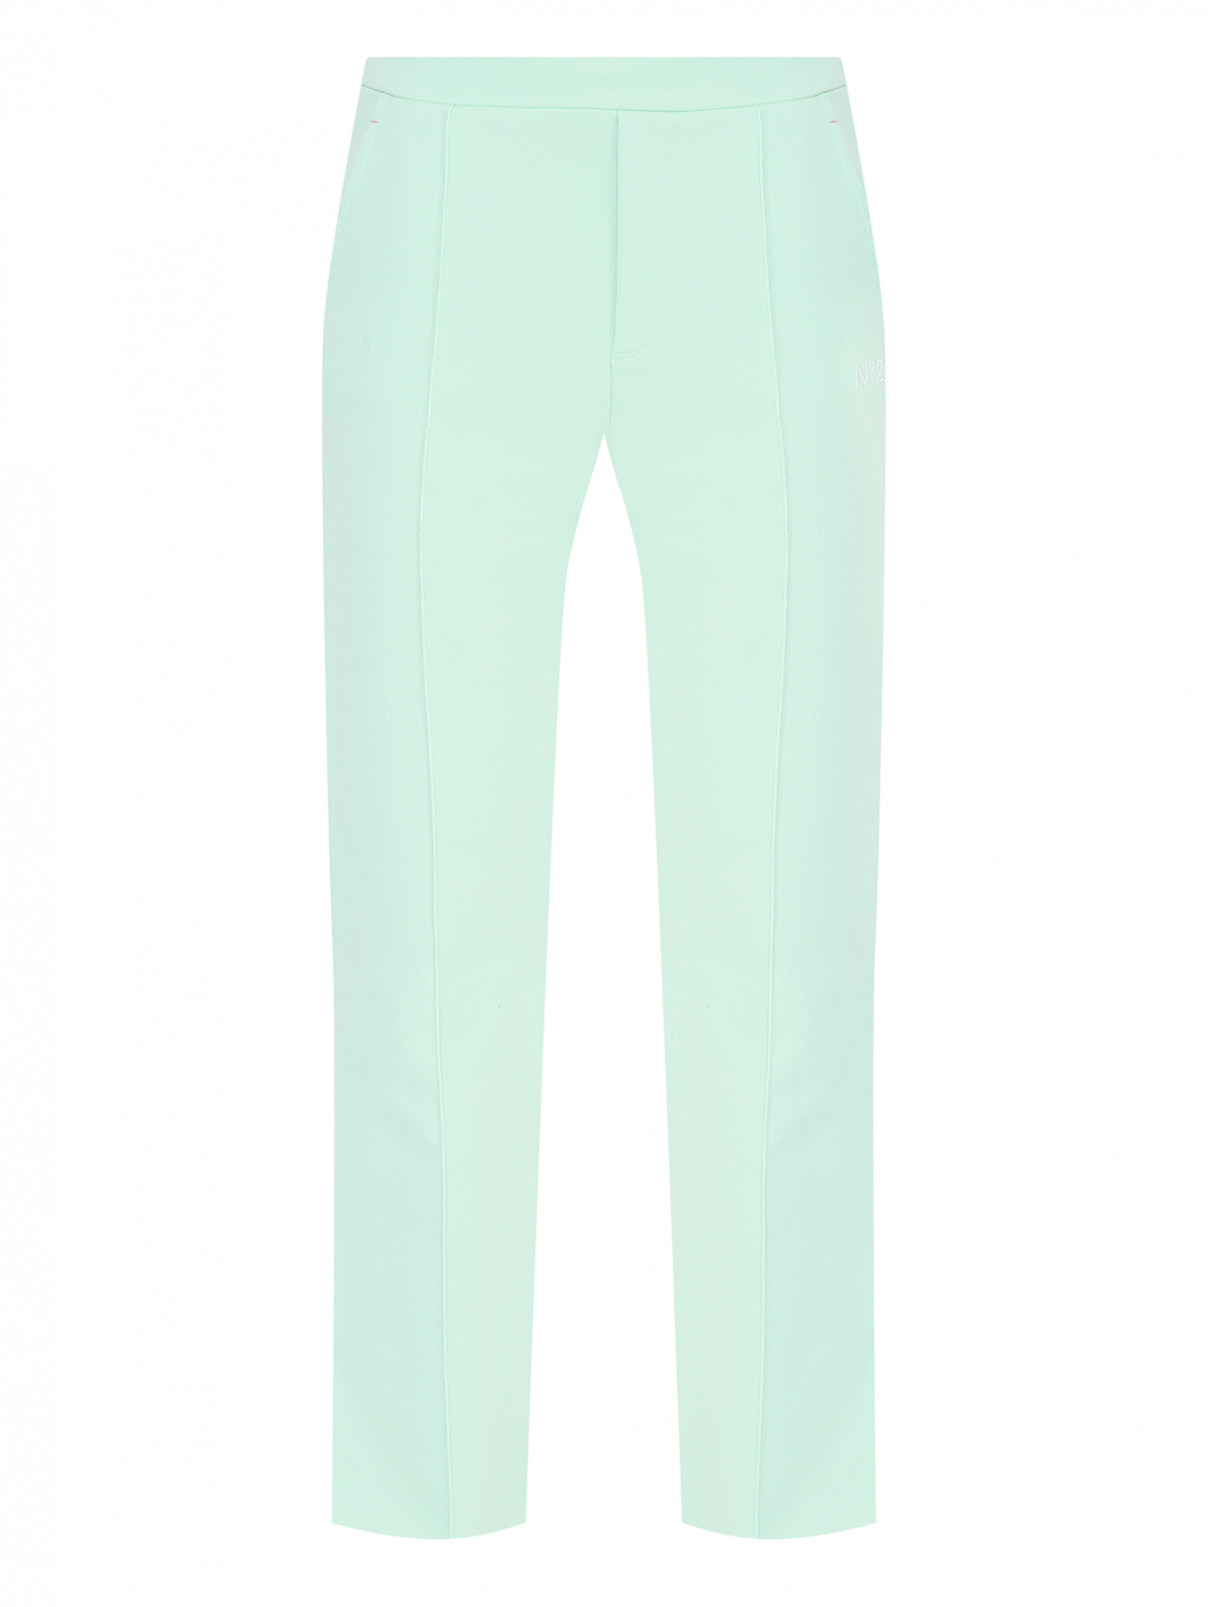 Трикотажные брюки со стрелками N21  –  Общий вид  – Цвет:  Зеленый